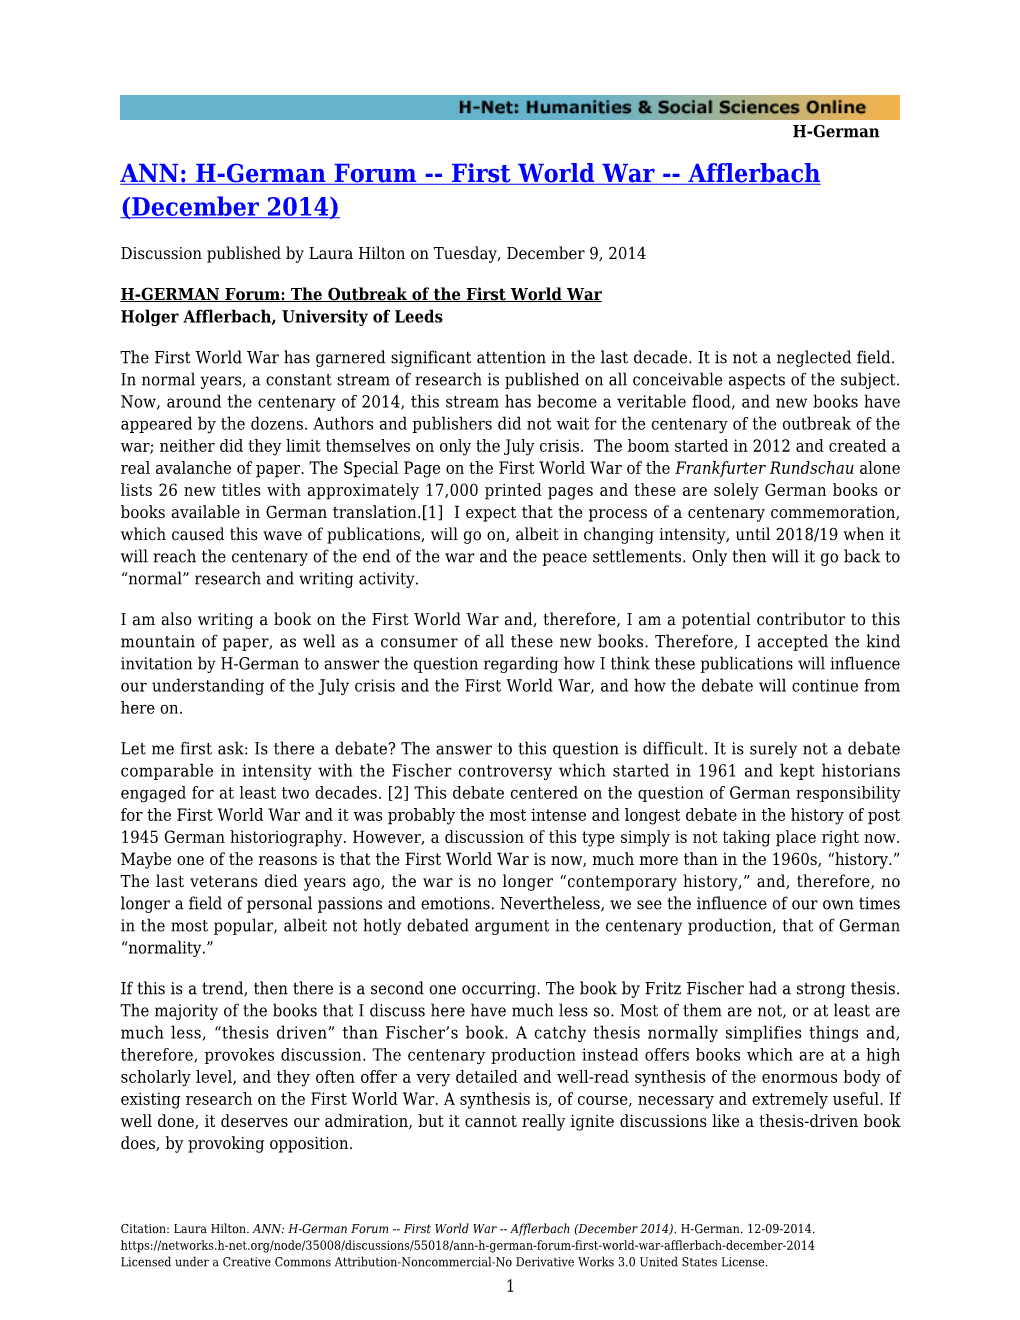 H-German Forum -- First World War -- Afflerbach (December 2014)